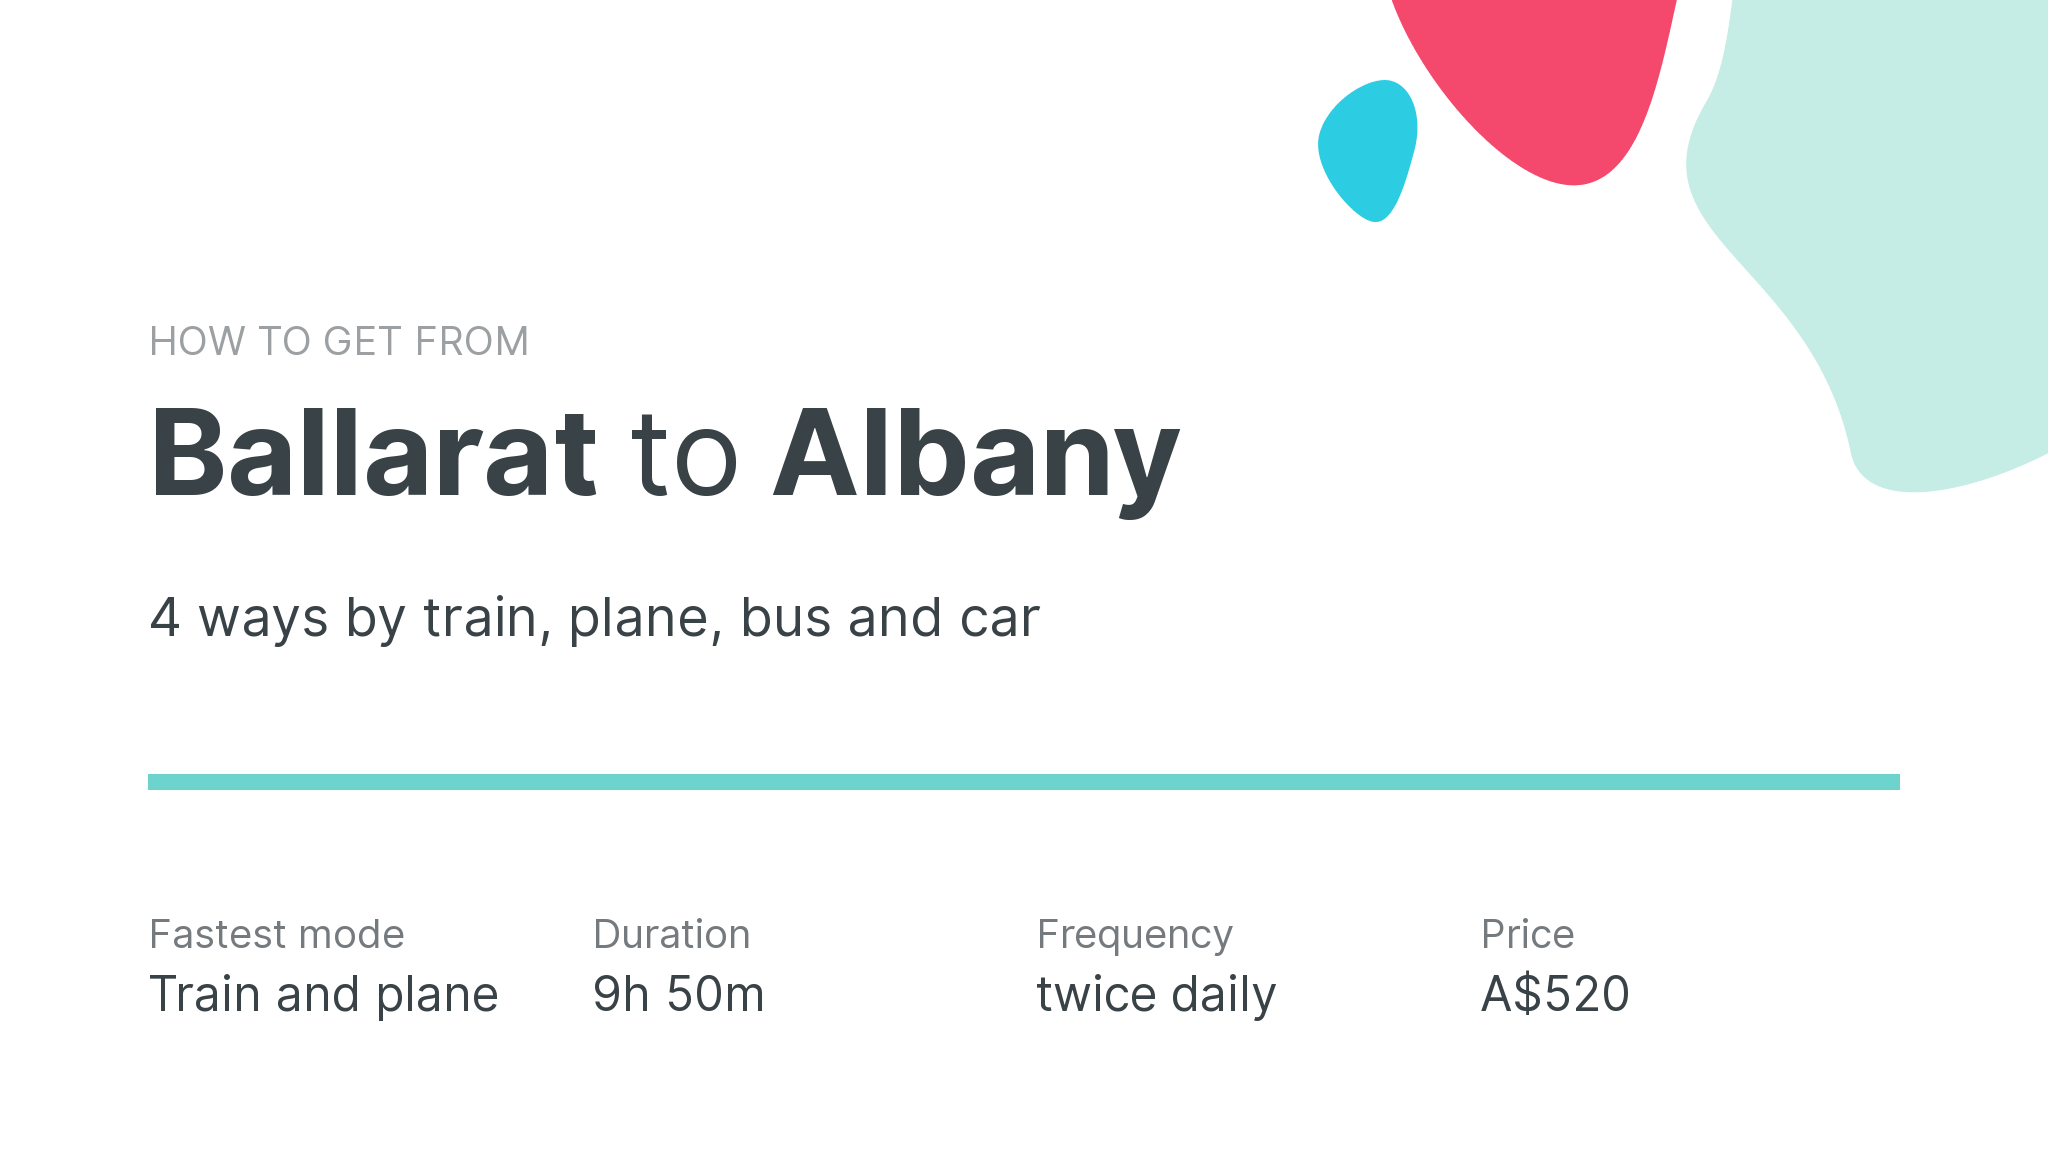 How do I get from Ballarat to Albany